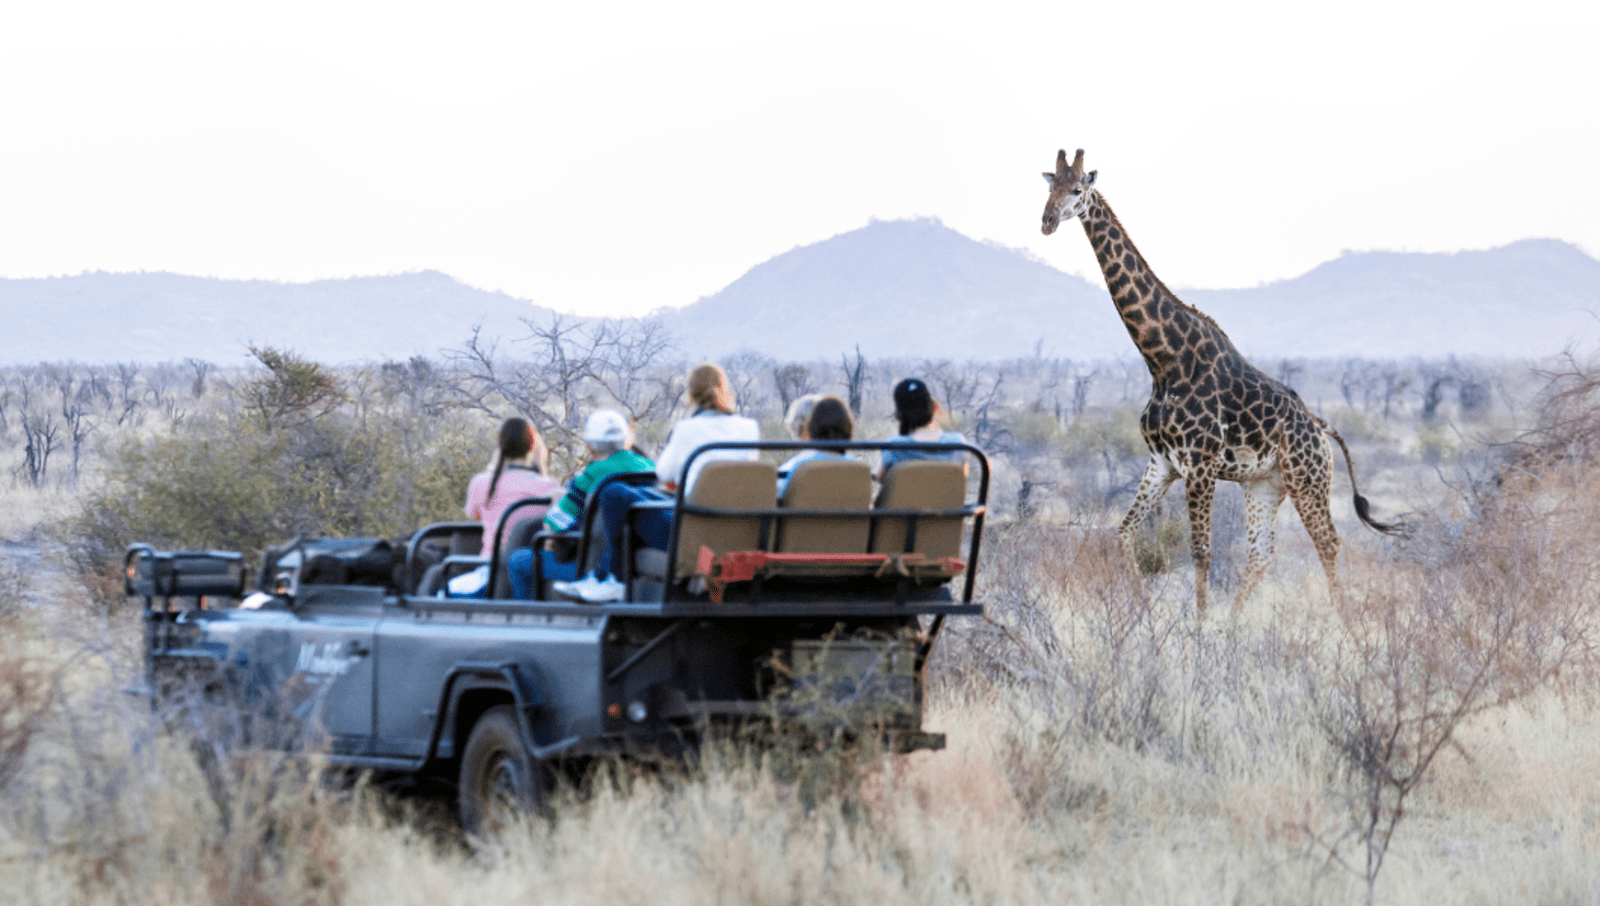 People sitting in safari car looking at giraffe in the wild